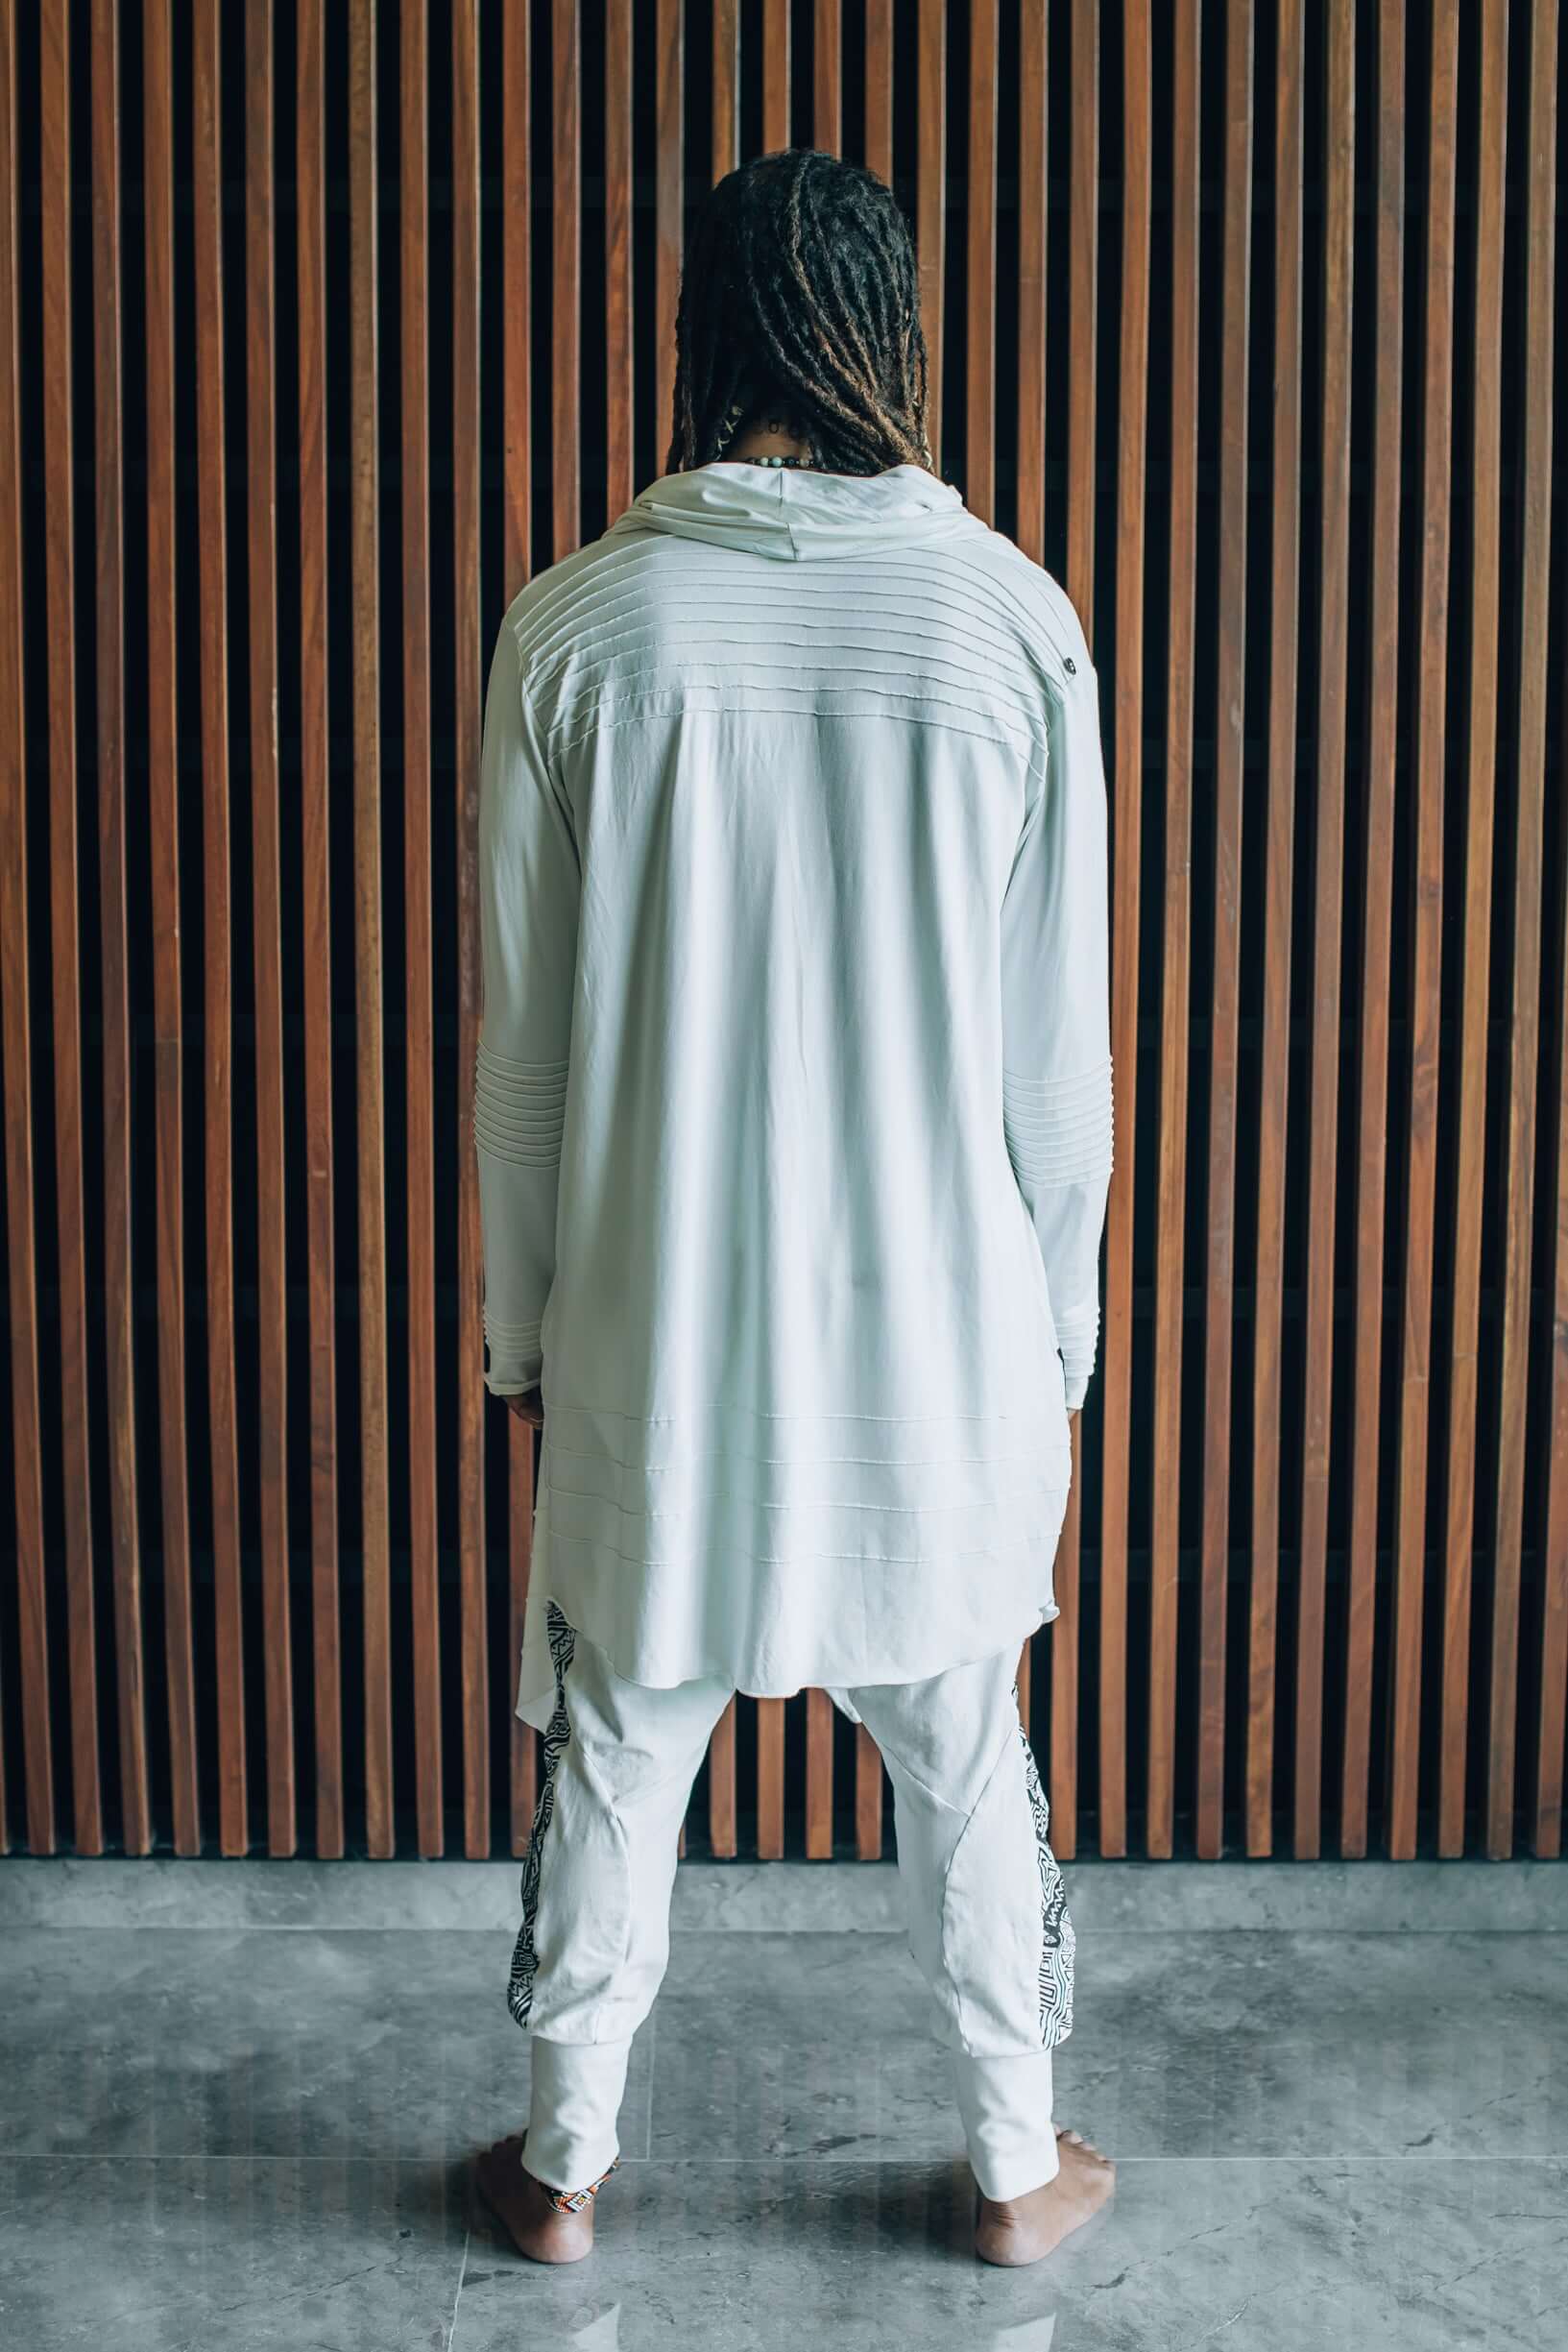 KUU - Hooded Long-Sleeve Post Apocalyptic Bamboo Cardigan